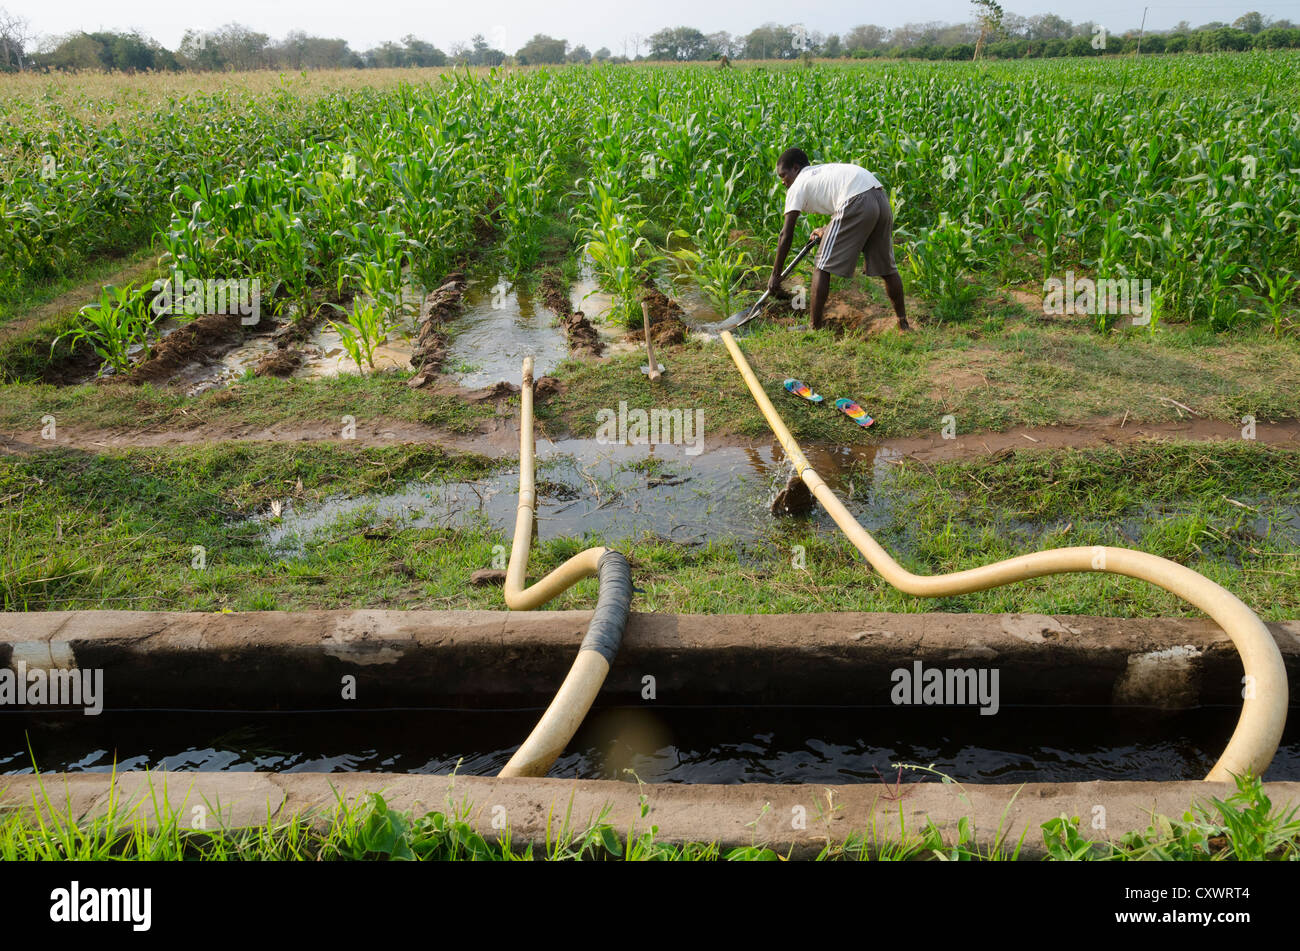 Buleya Malima Genossenschaft. Wirtschaftender Landwirt Bewässerung seines Fachs mit kooperative Infrastruktur. Sambia. Stockfoto